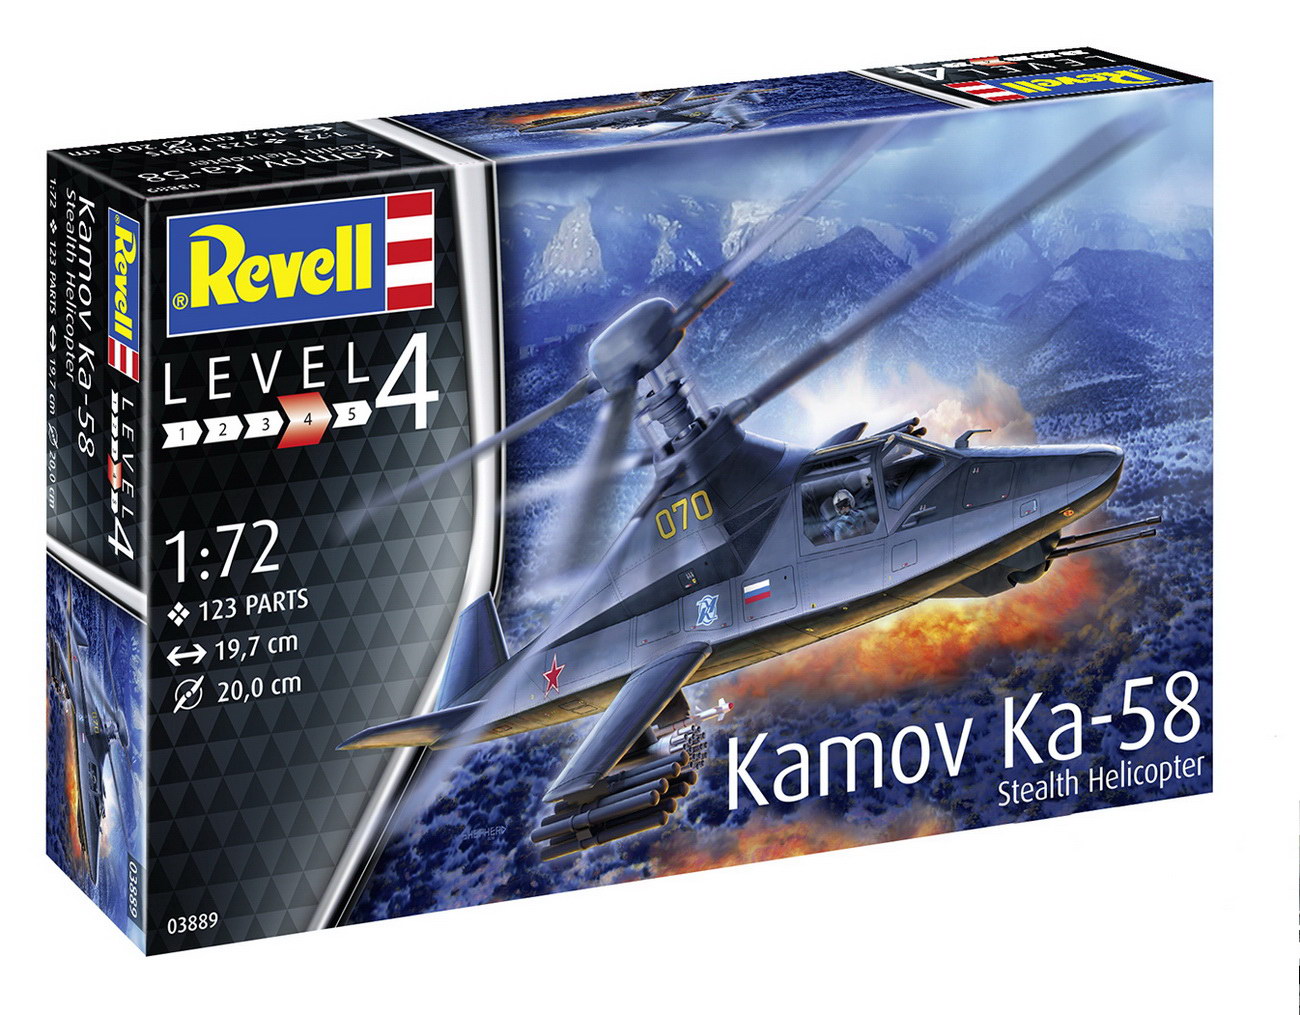 Revell 03889 - Kamov Ka-58 Stealth Helicopter - Hubschrauber Modell